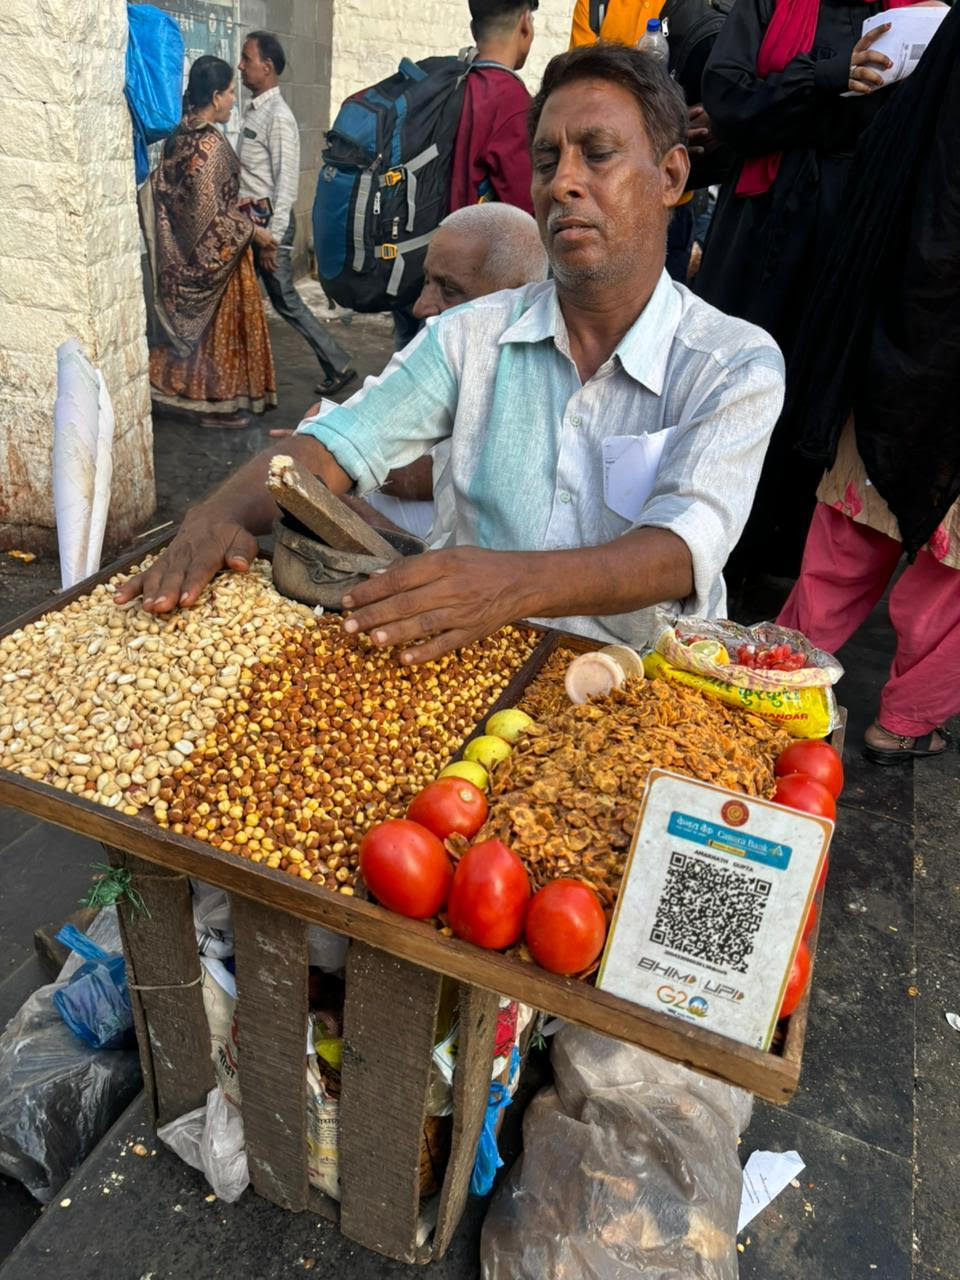 Ενας απο τους συνεργάτες που συνοδεύουν τον πρόεδρο Μητσοτάκη στην Ινδία μου έστειλε την συγκεκριμένη φωτογραφία με την επισήμανση ότι «έχουν QR code παντού».